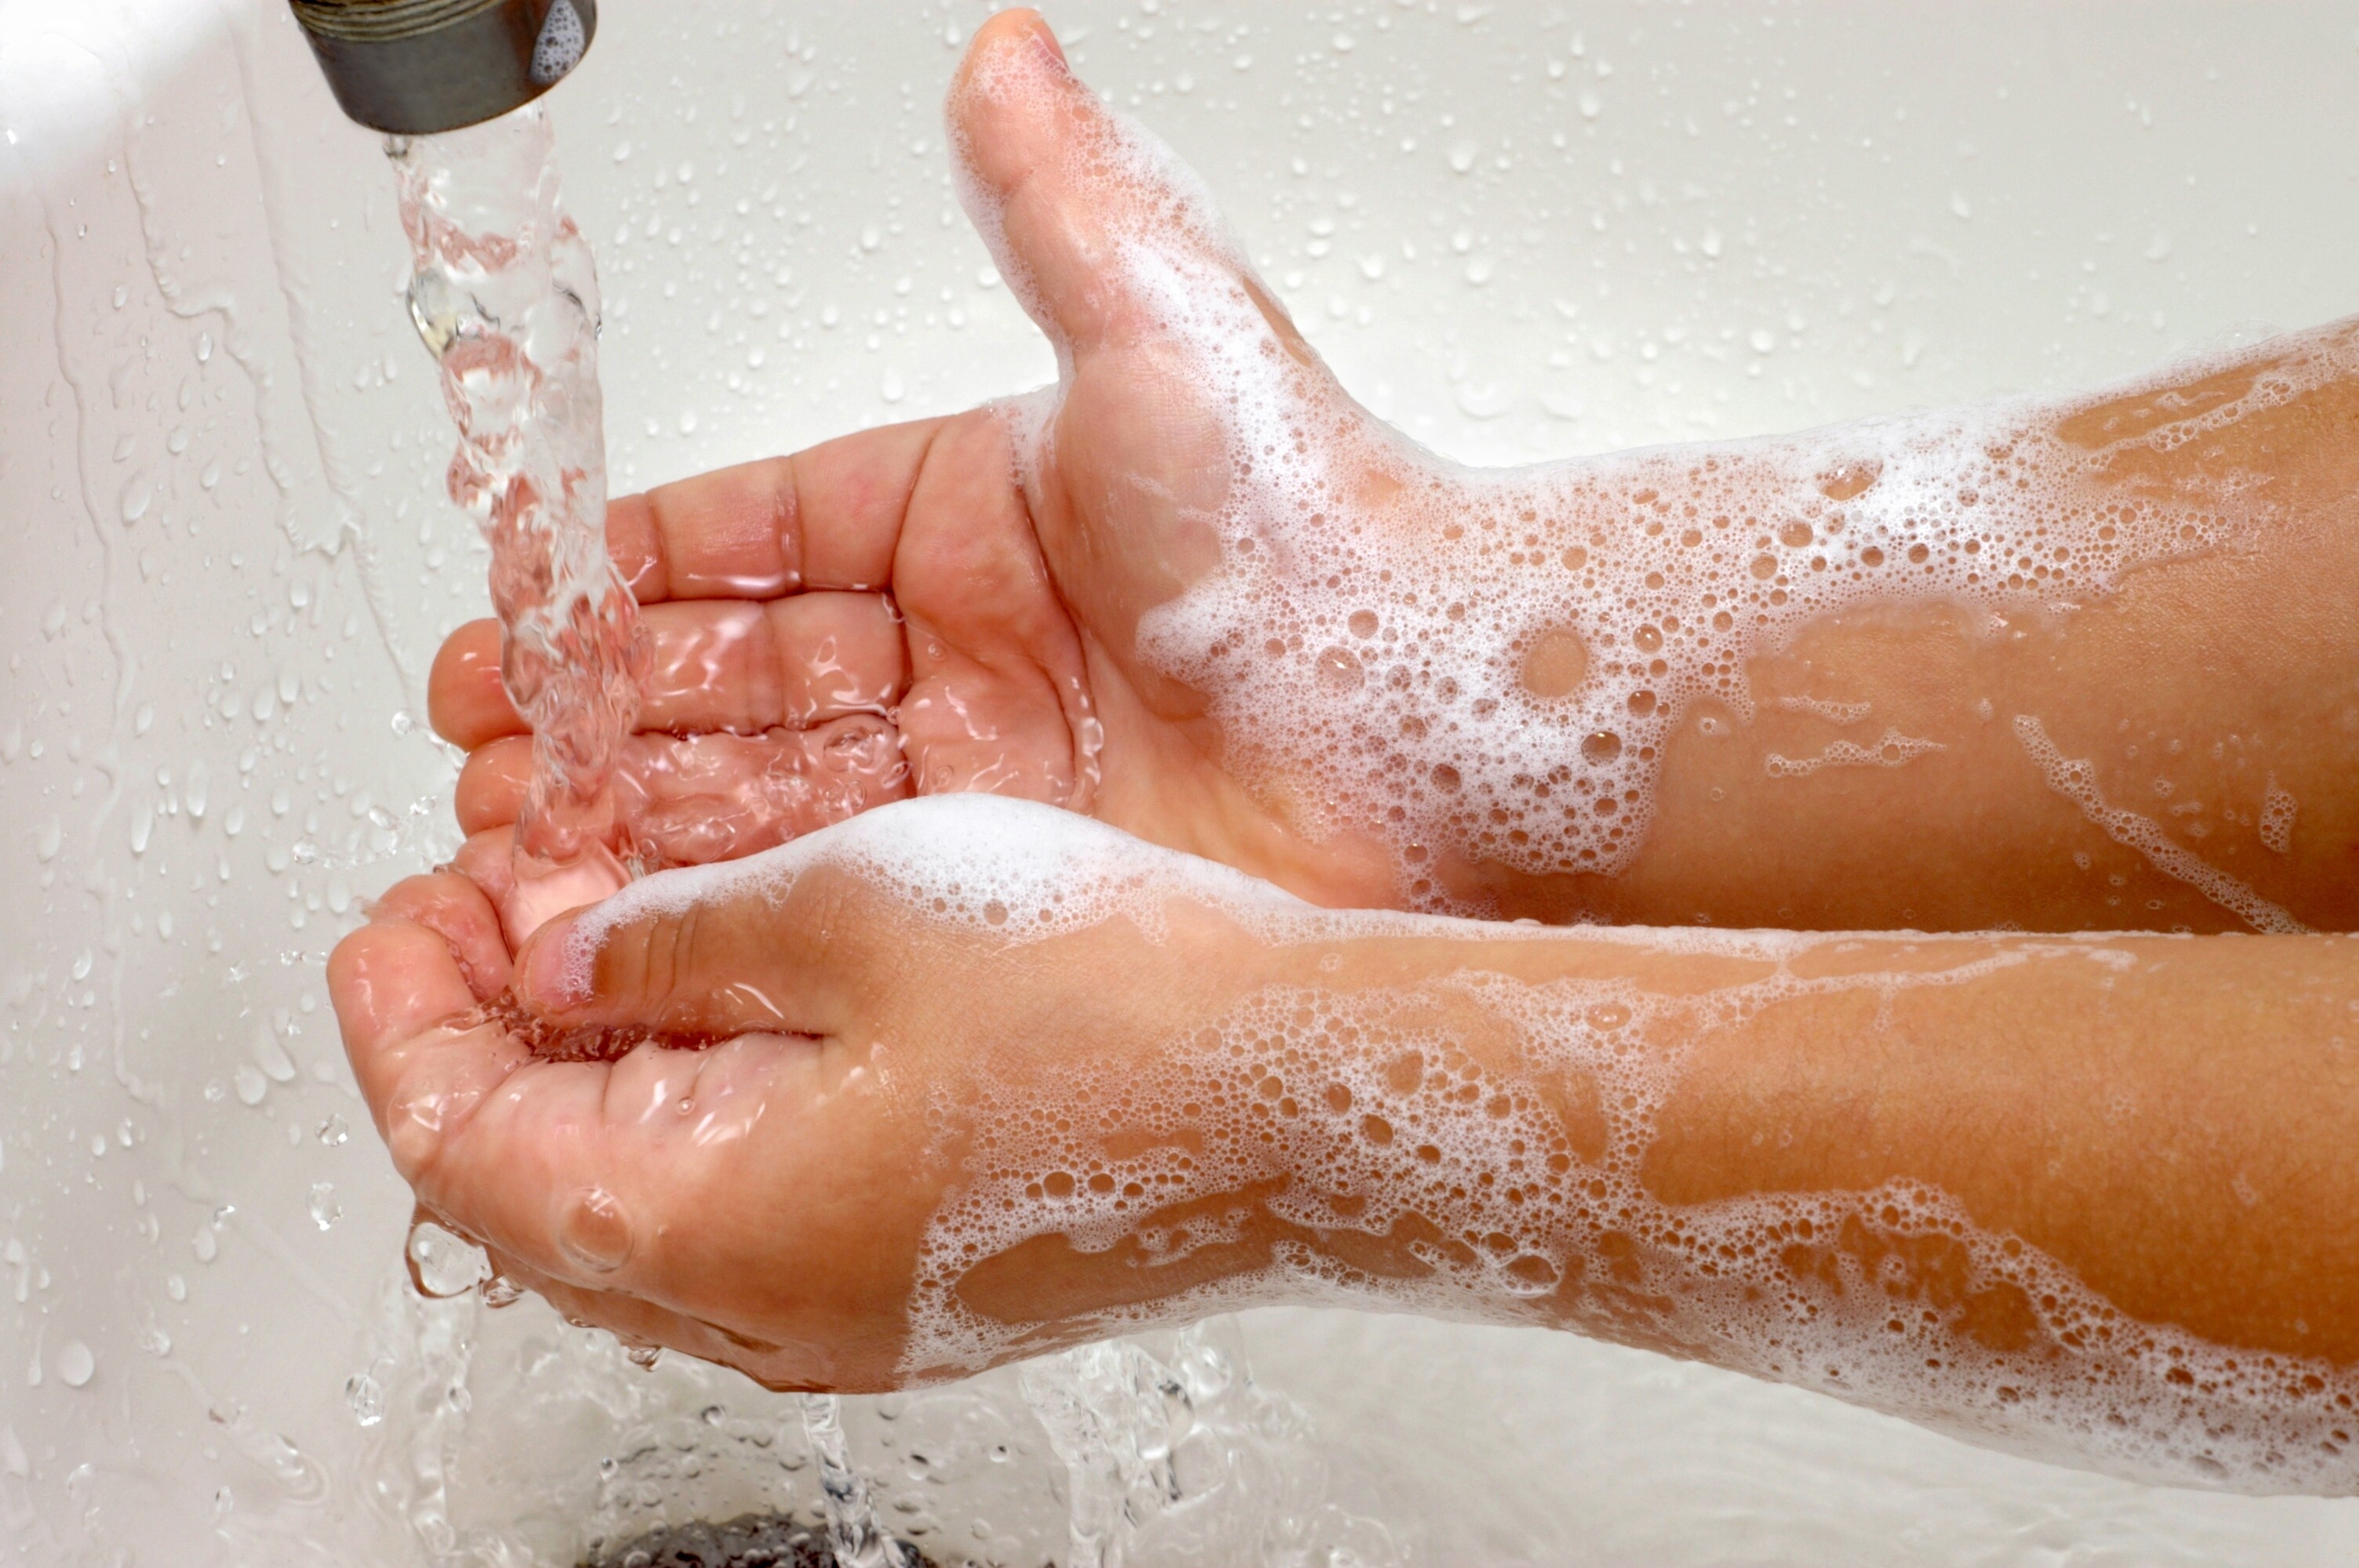 Uso do desinfetante na higiene das mães pode ser mais eficiente que água e sabão, diz estudo (Foto: Thinkstock)